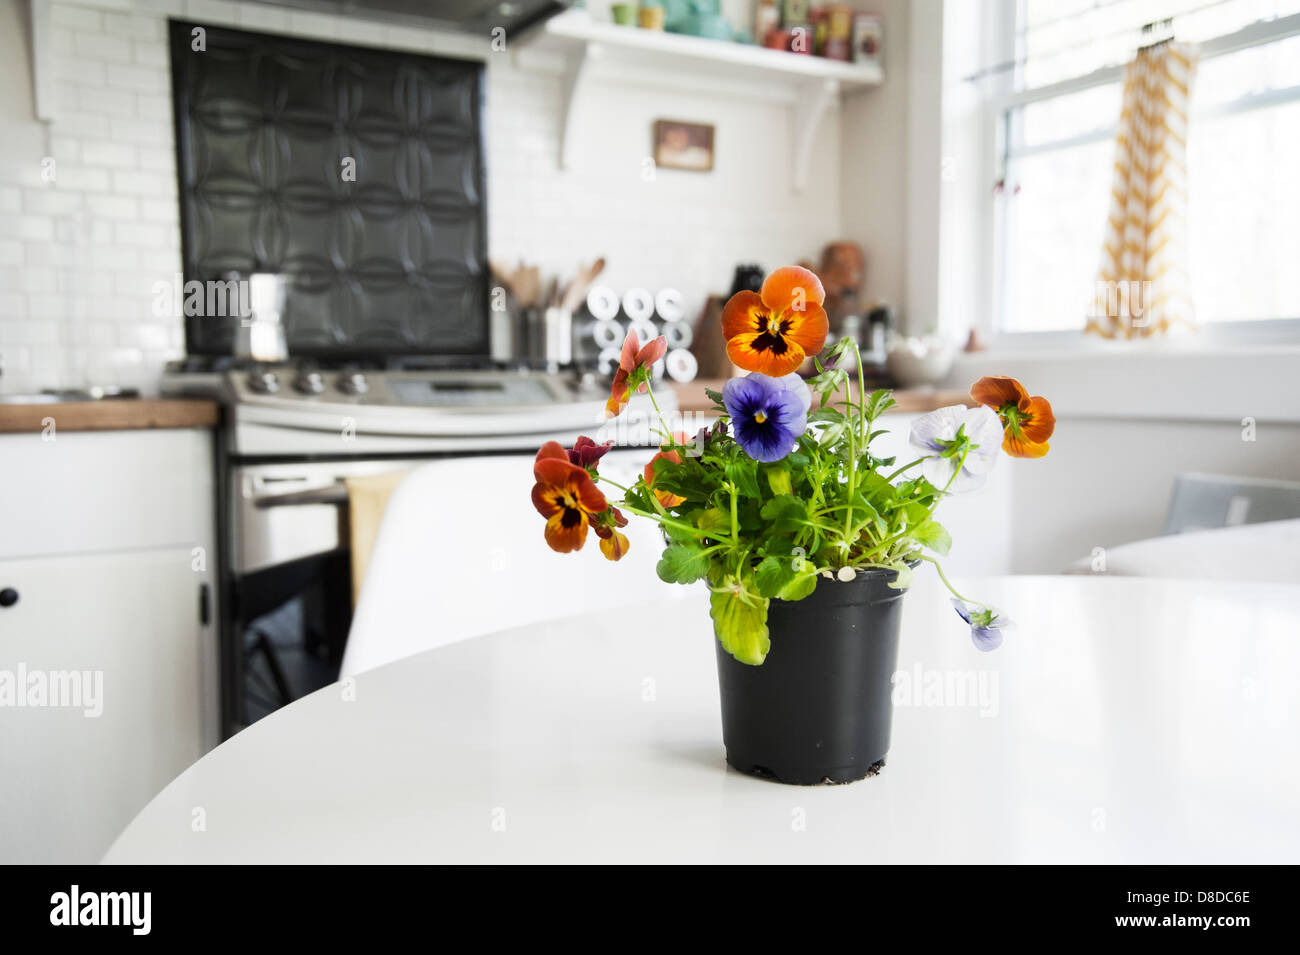 Un pot avec des pensées est assis sur une table de cuisine dans une cuisine de style cottage Banque D'Images